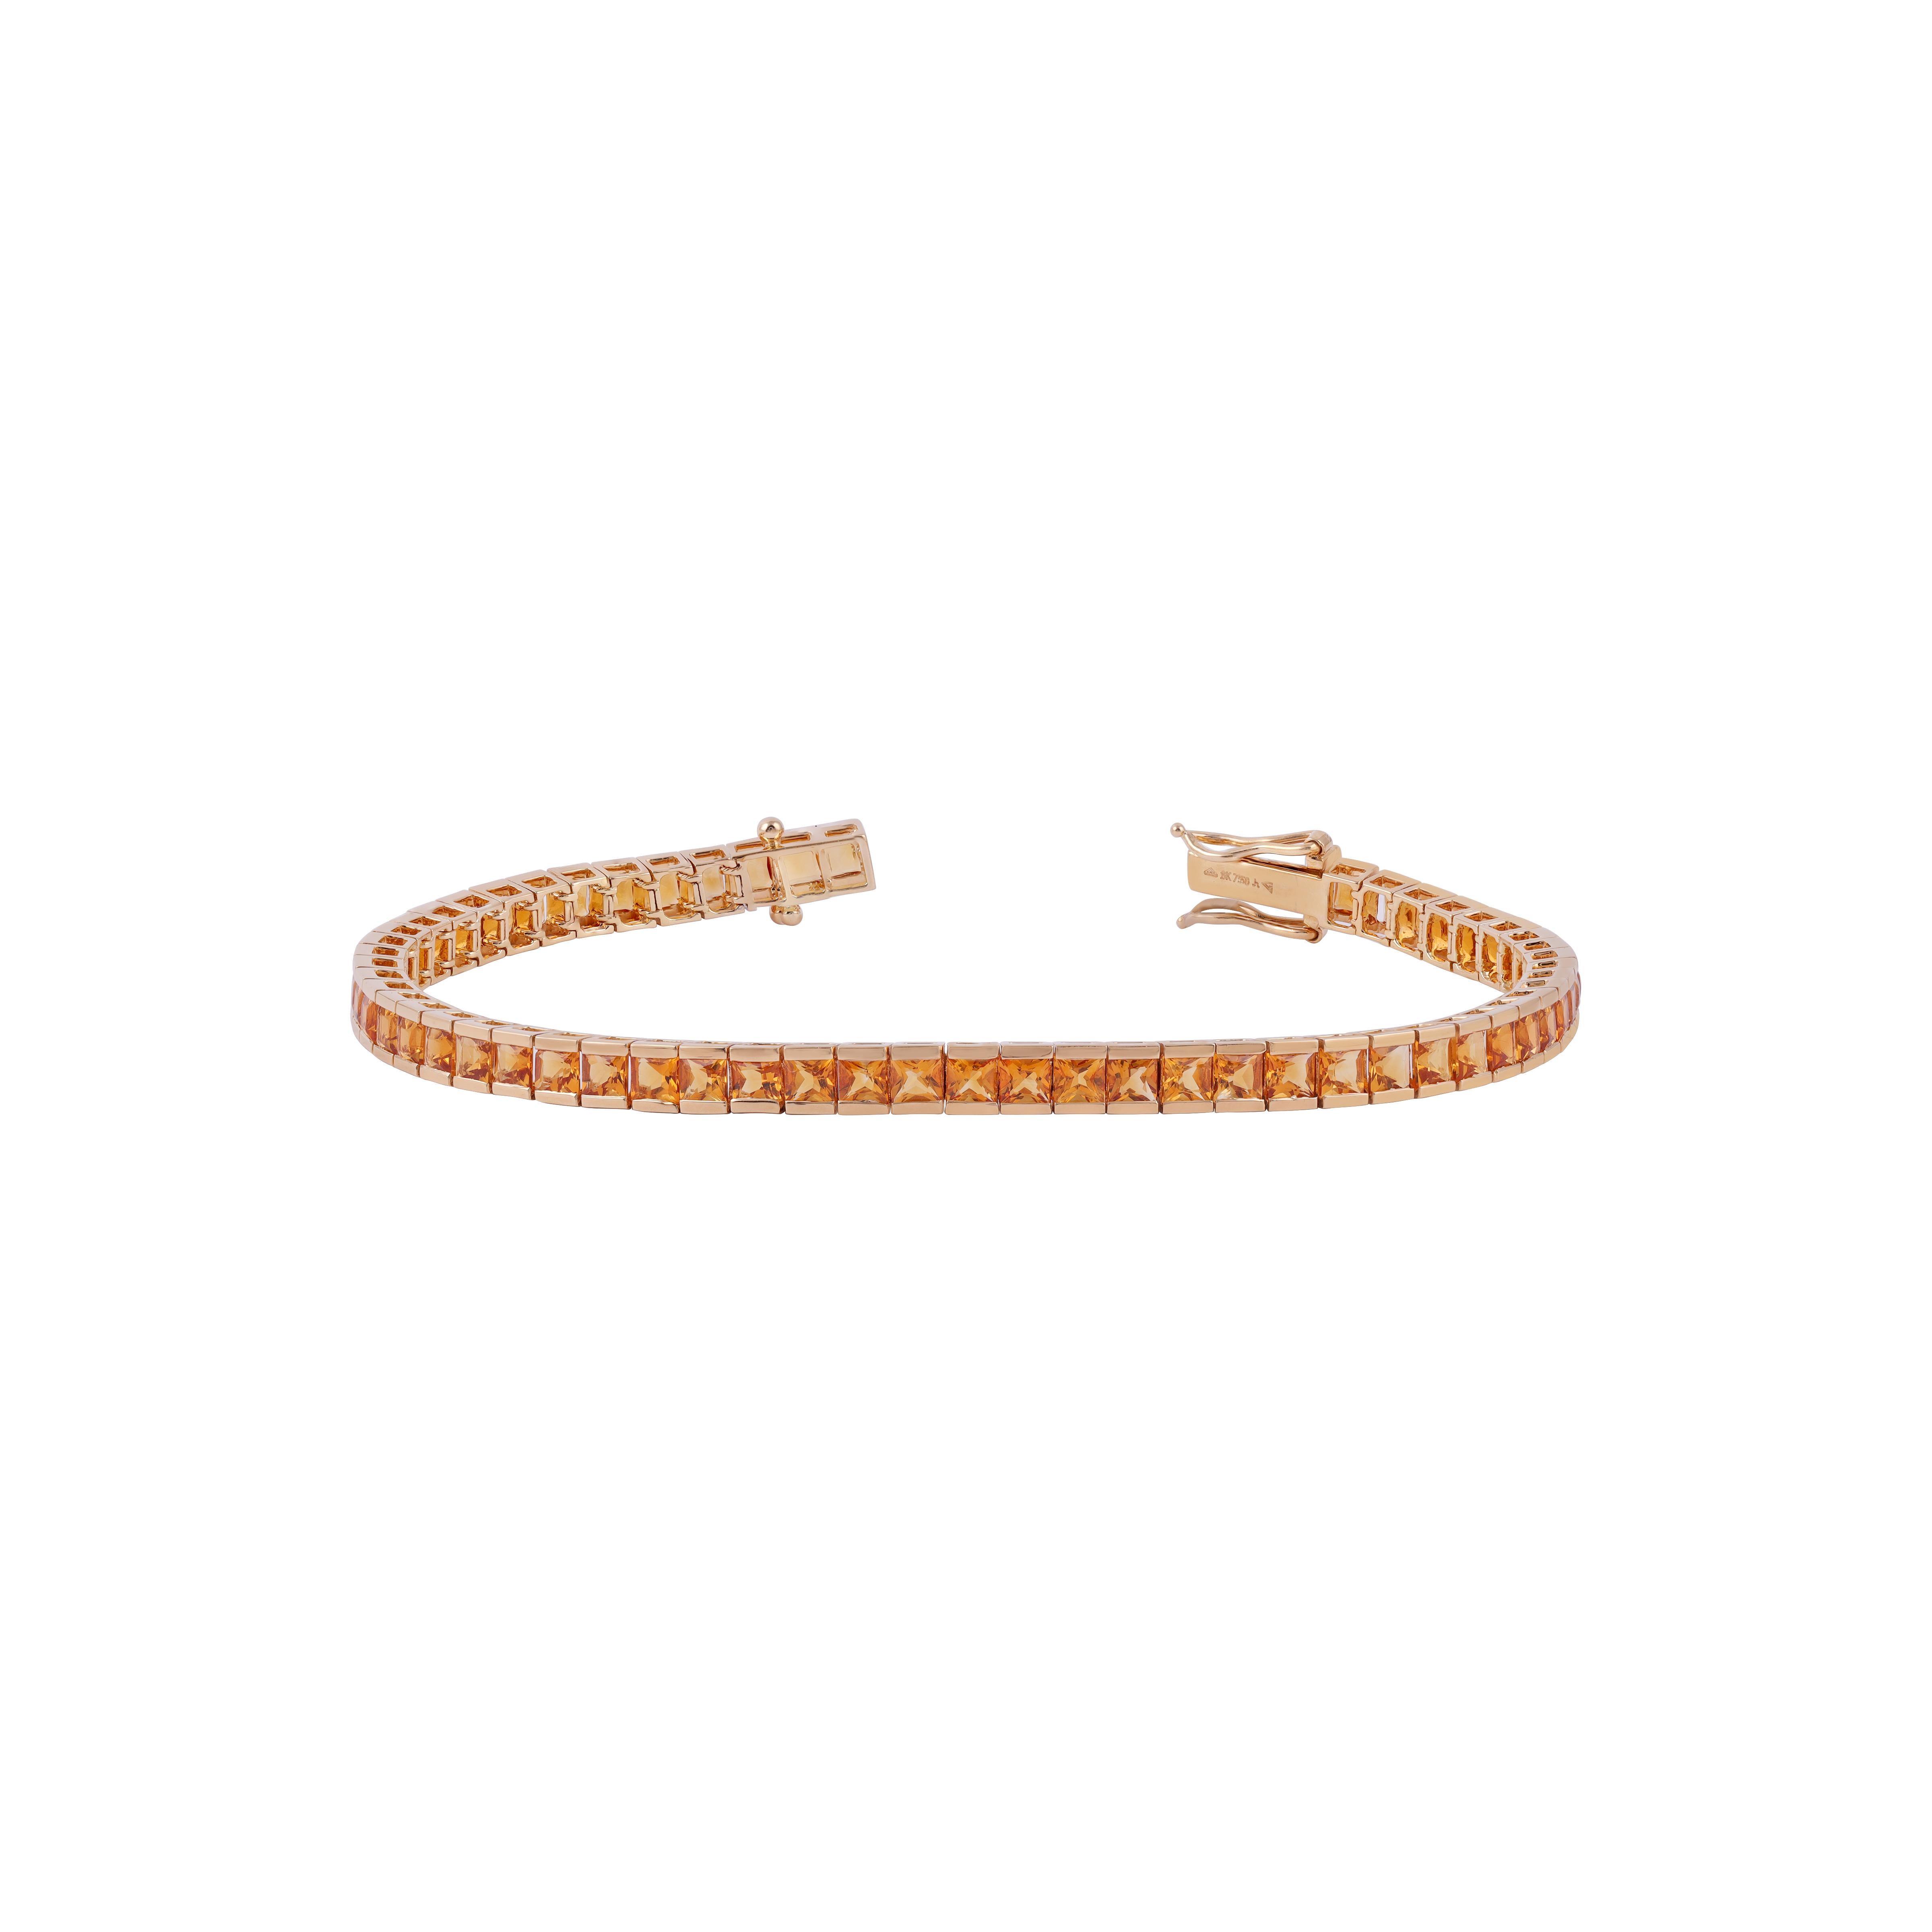 Dieses elegante Rubinarmband hat folgende Eigenschaften   Citrin im Prinzessinnenschliff 7,54 Karat in der Kanalfassung, dieses Armband ist komplett aus 18 Karat  Gold Gewicht 12,81 Gramm, ist dies ein klassisches Tennisarmband.
Größe - 7 Zoll.
 